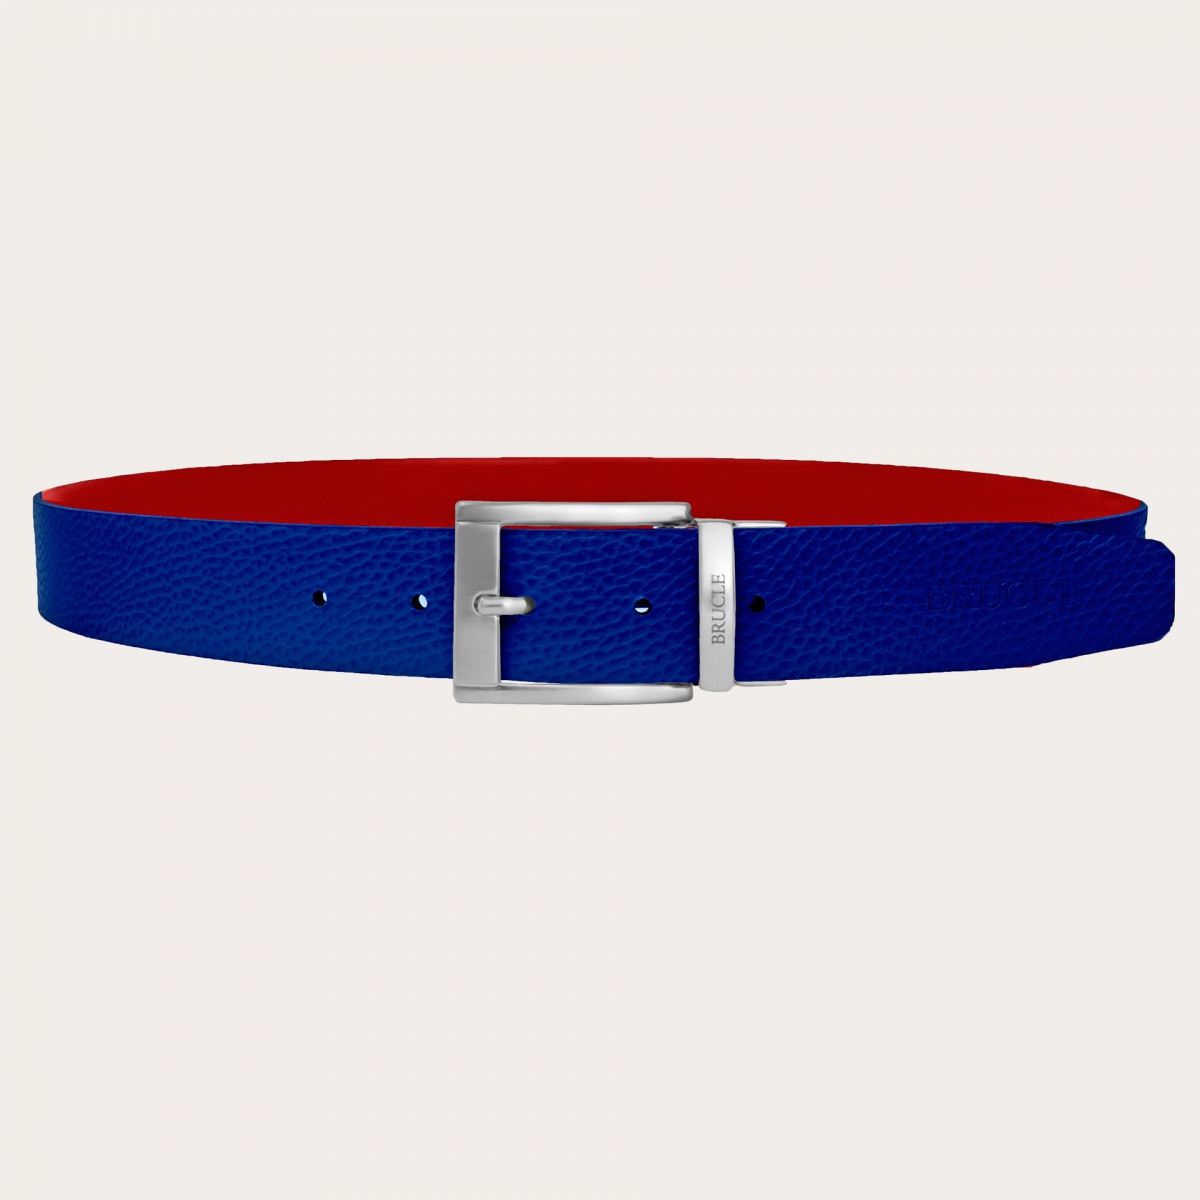 BRUCLE Cinturón reversible azul royal y rojo